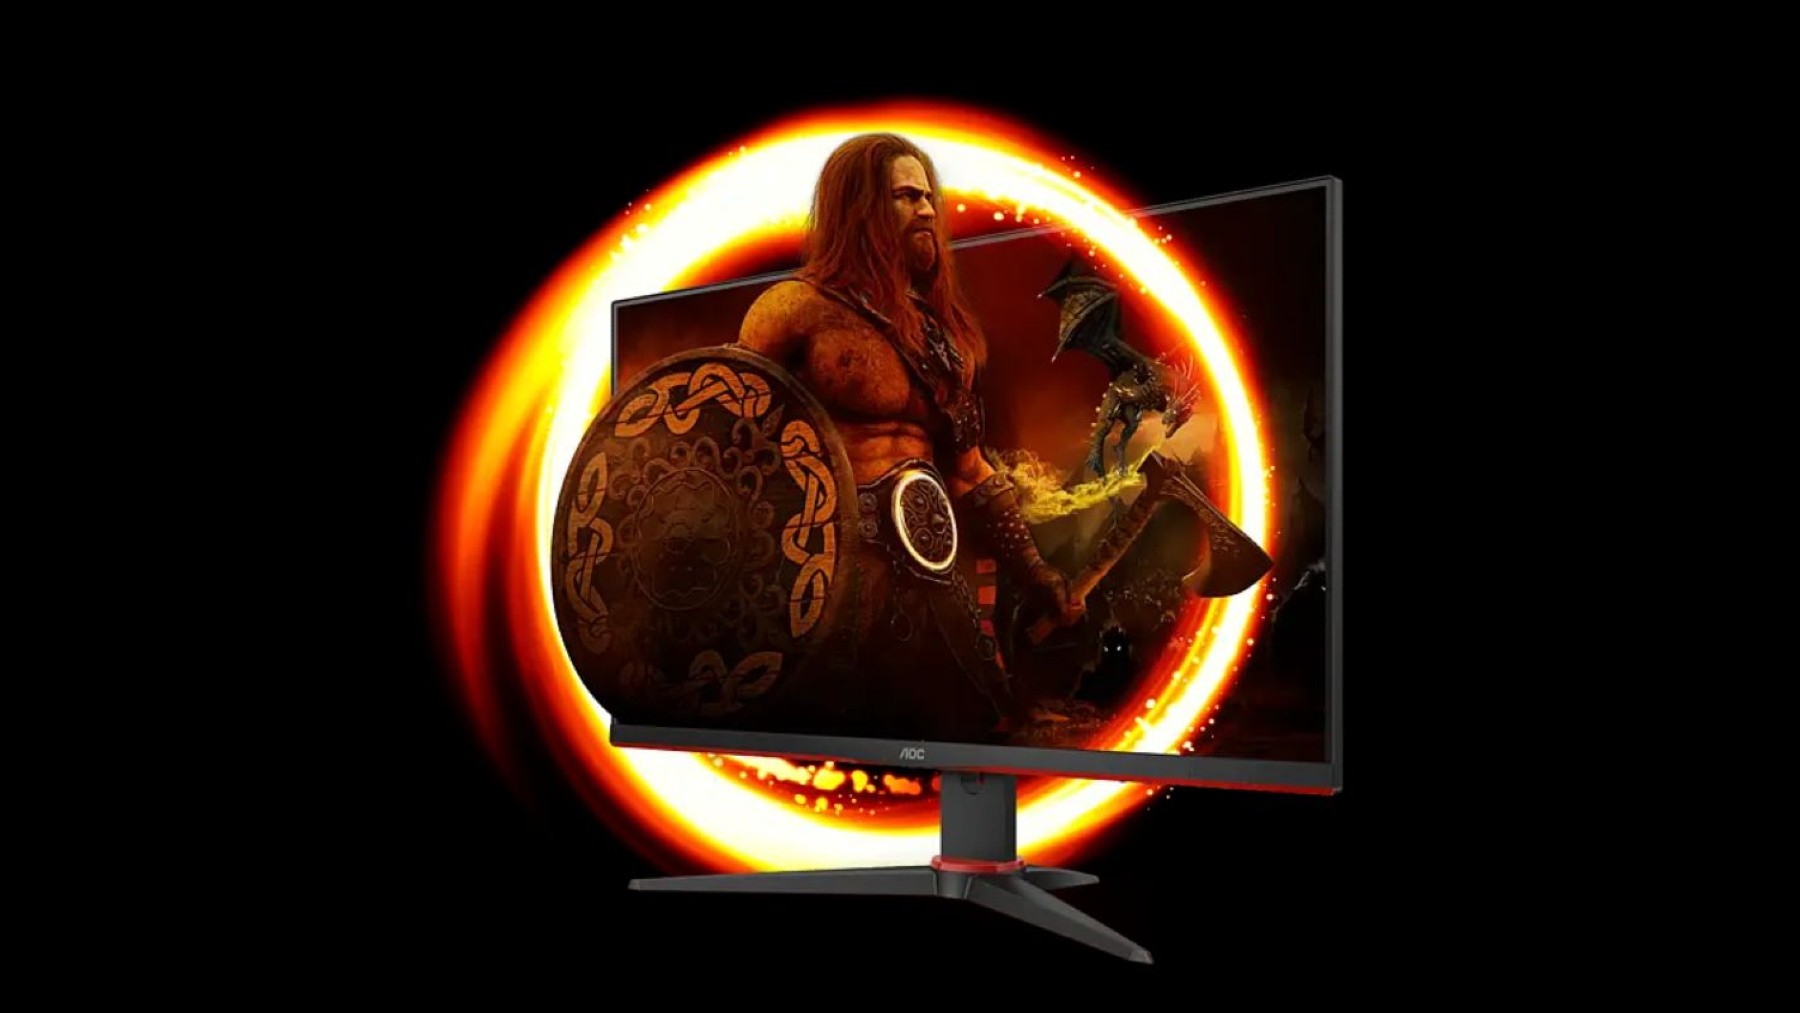 Renueva tu equipo gaming con este monitor que está rebajado un 30% ¡solo en el Black Friday de PcComponentes